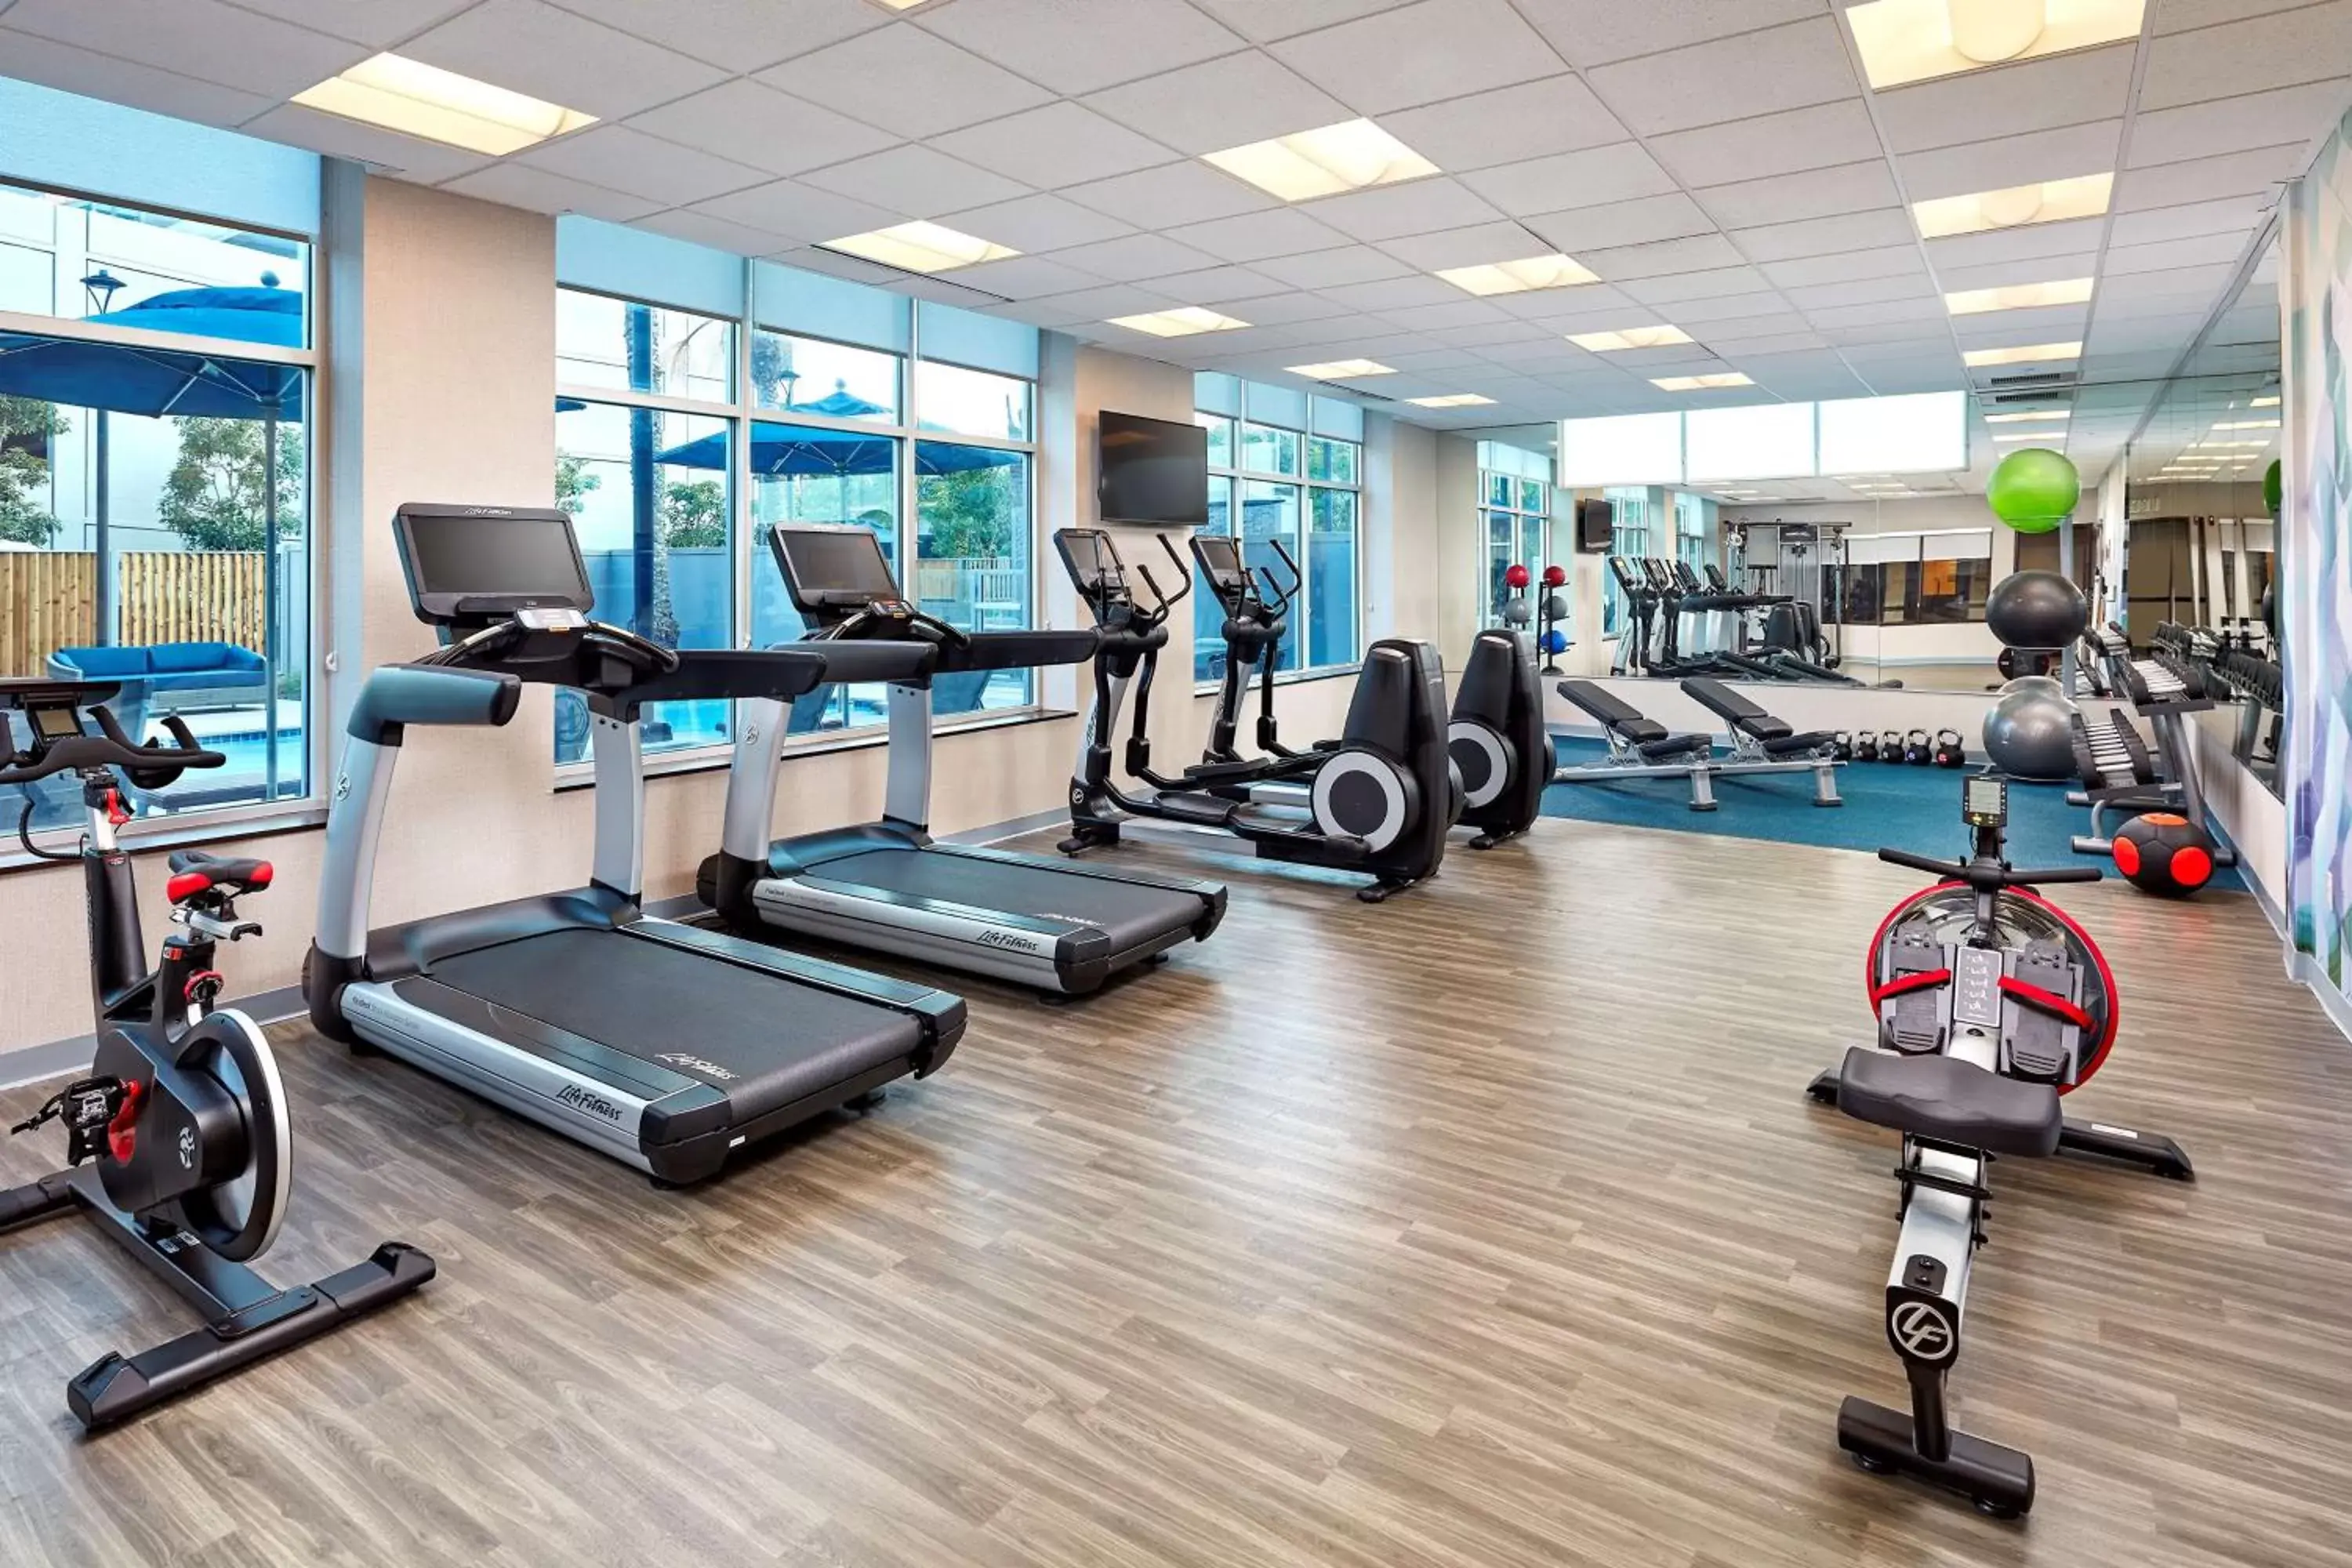 Fitness centre/facilities, Fitness Center/Facilities in Hyatt Place Los Angeles / LAX / El Segundo